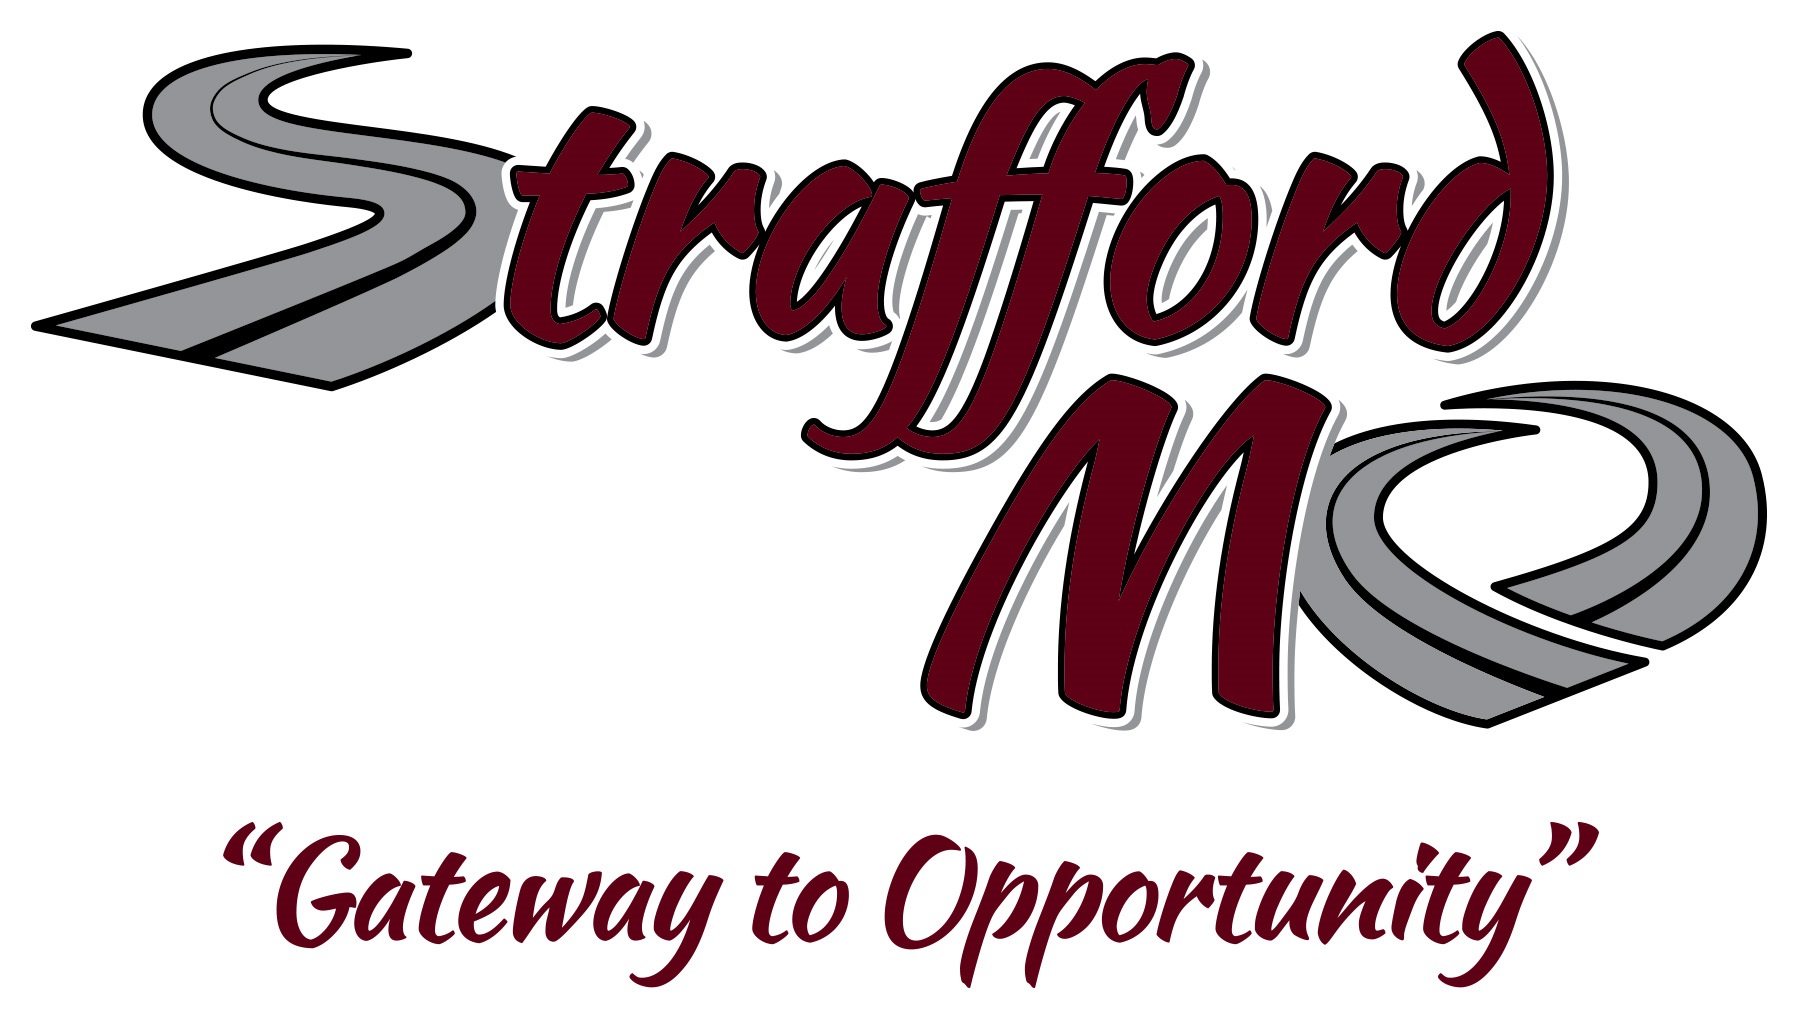 Strafford Logo FINAL